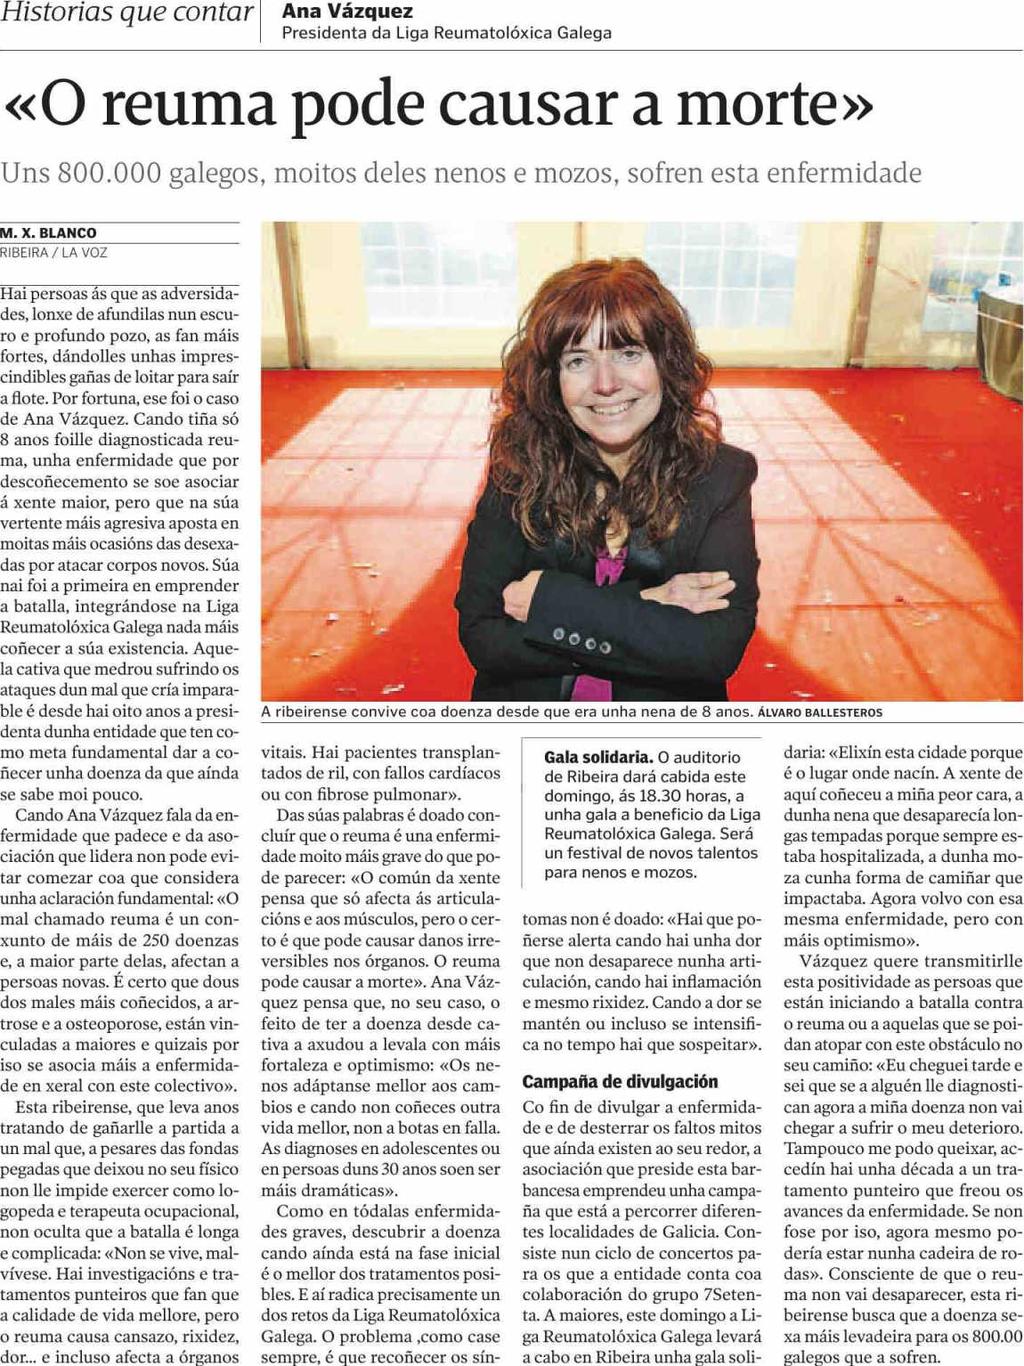 La Voz de Galicia (Lemos) Lugo Prensa: Tirada: Difusión: Diaria 9.255 Ejemplares 8.